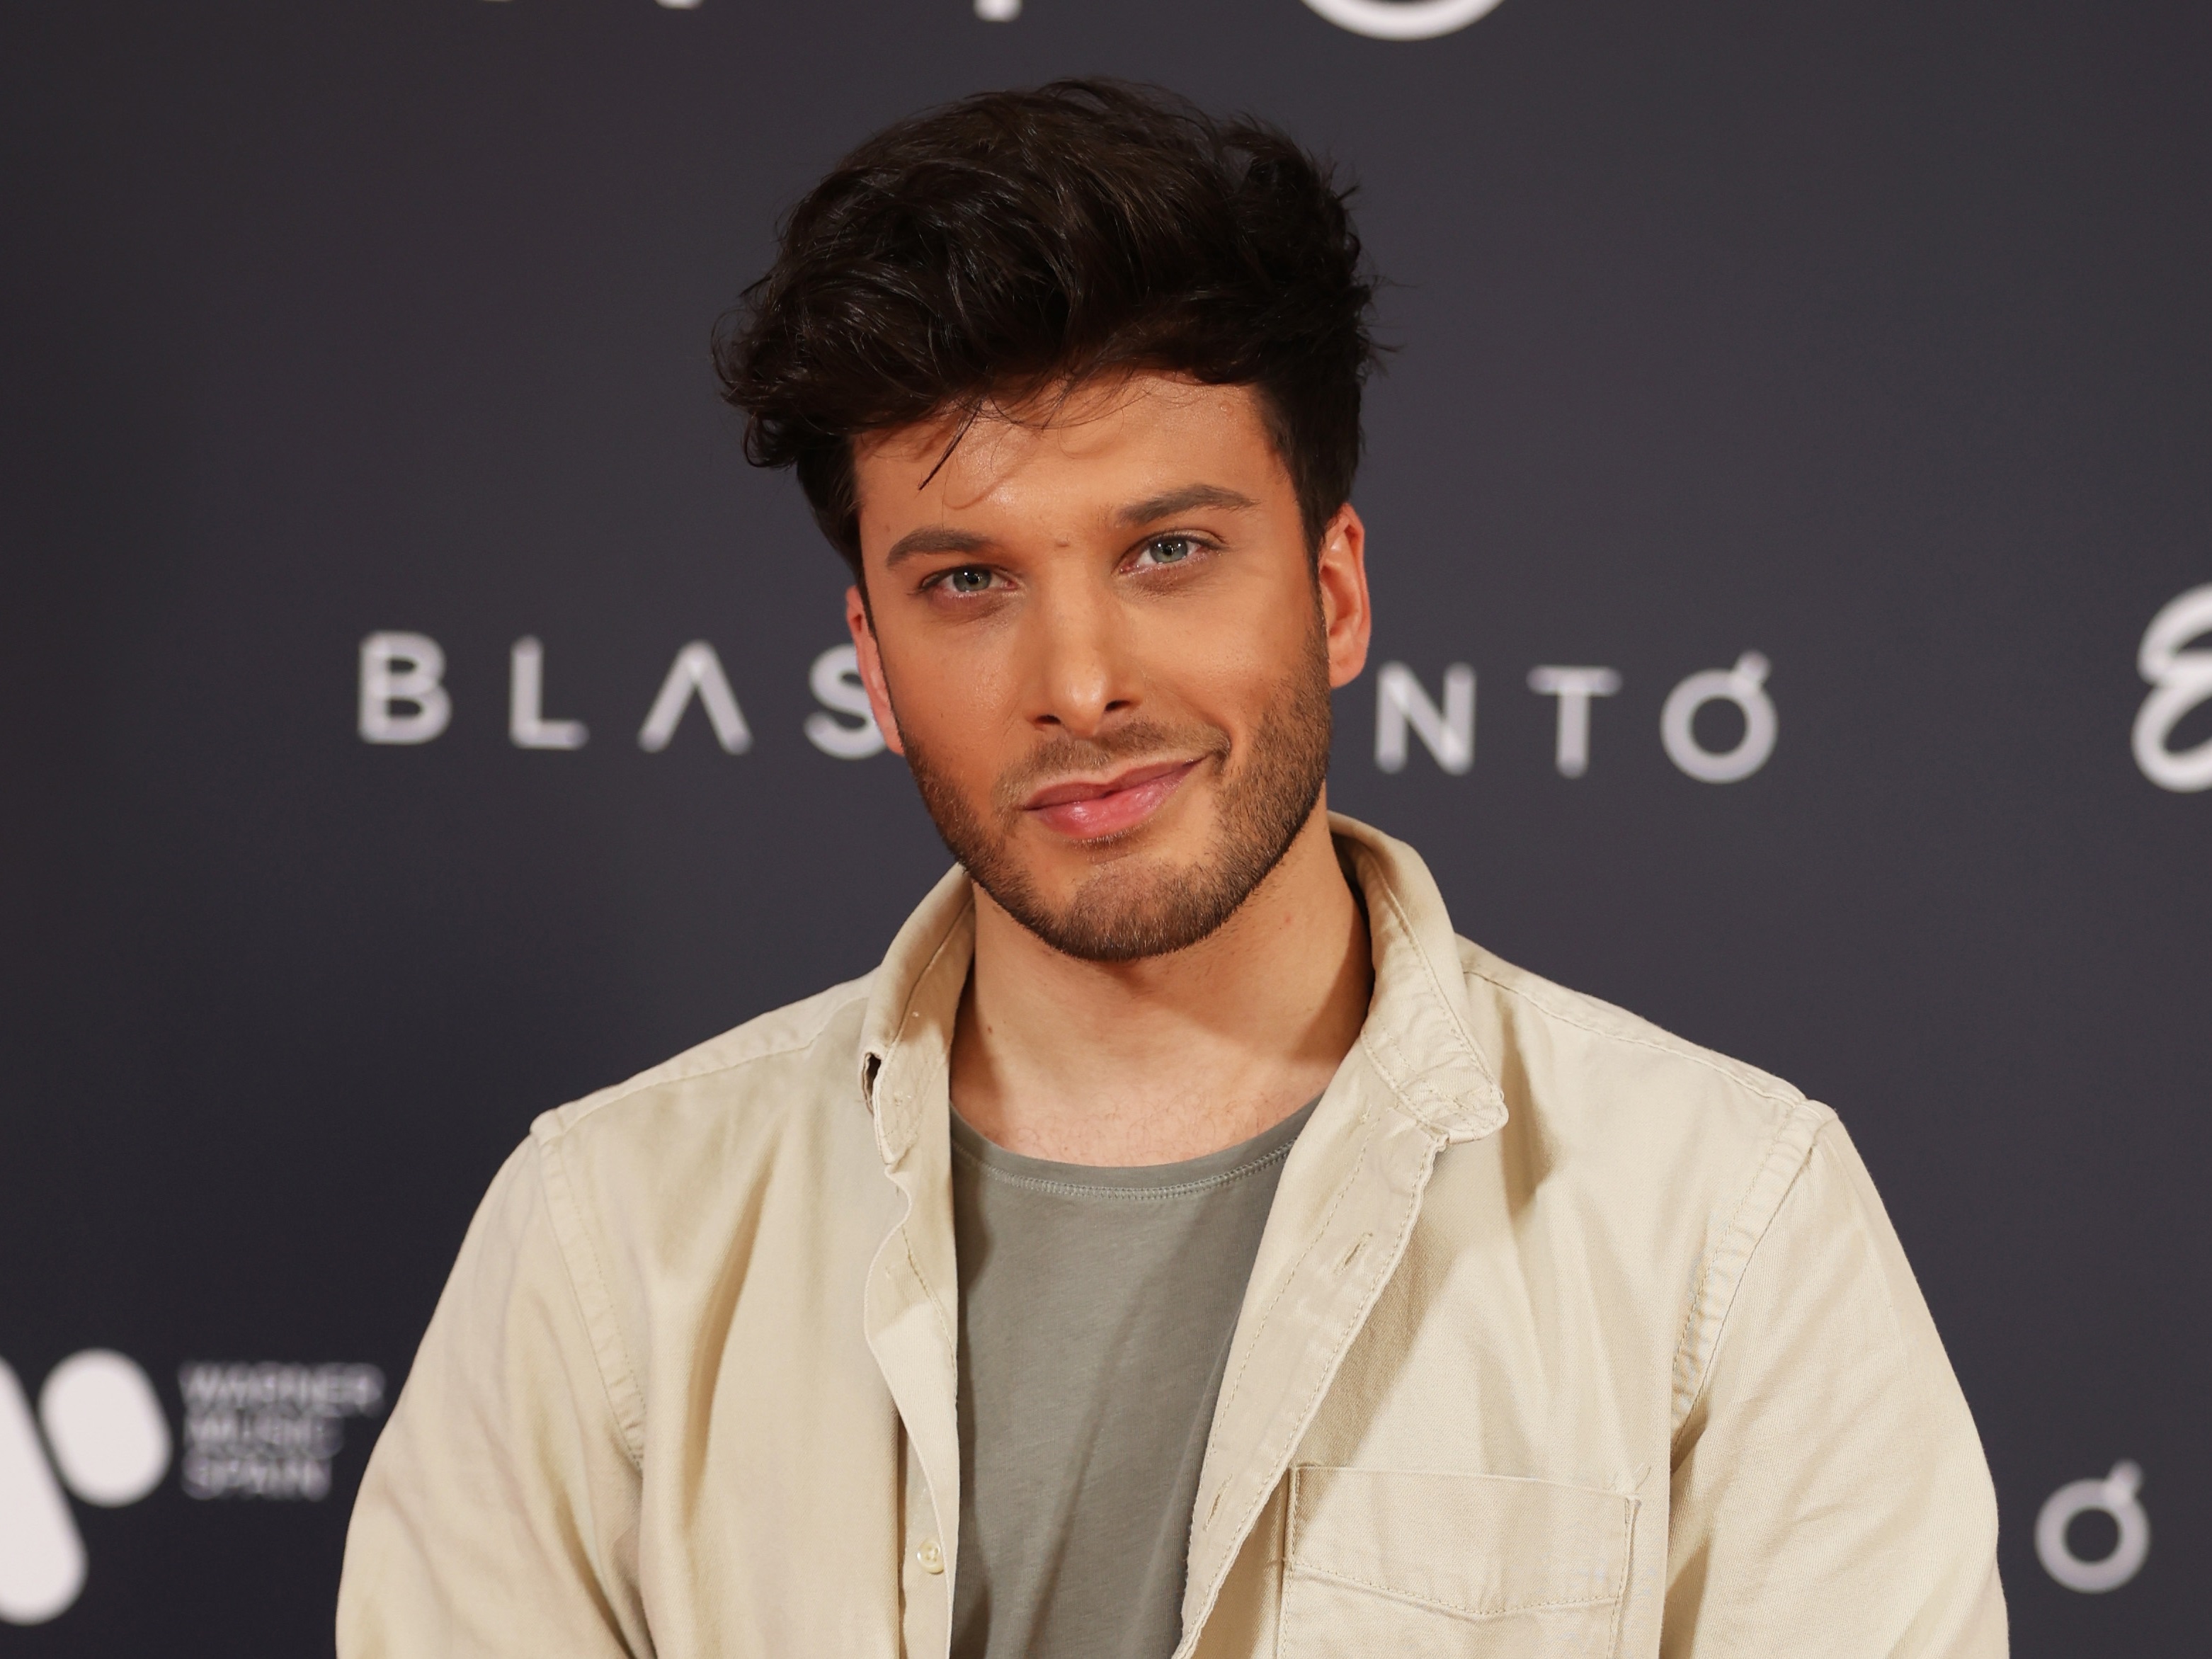 Blas Cantó regresa a la música tras su depresión: “En la época de Eurovisión podría haberme quitado la vida”